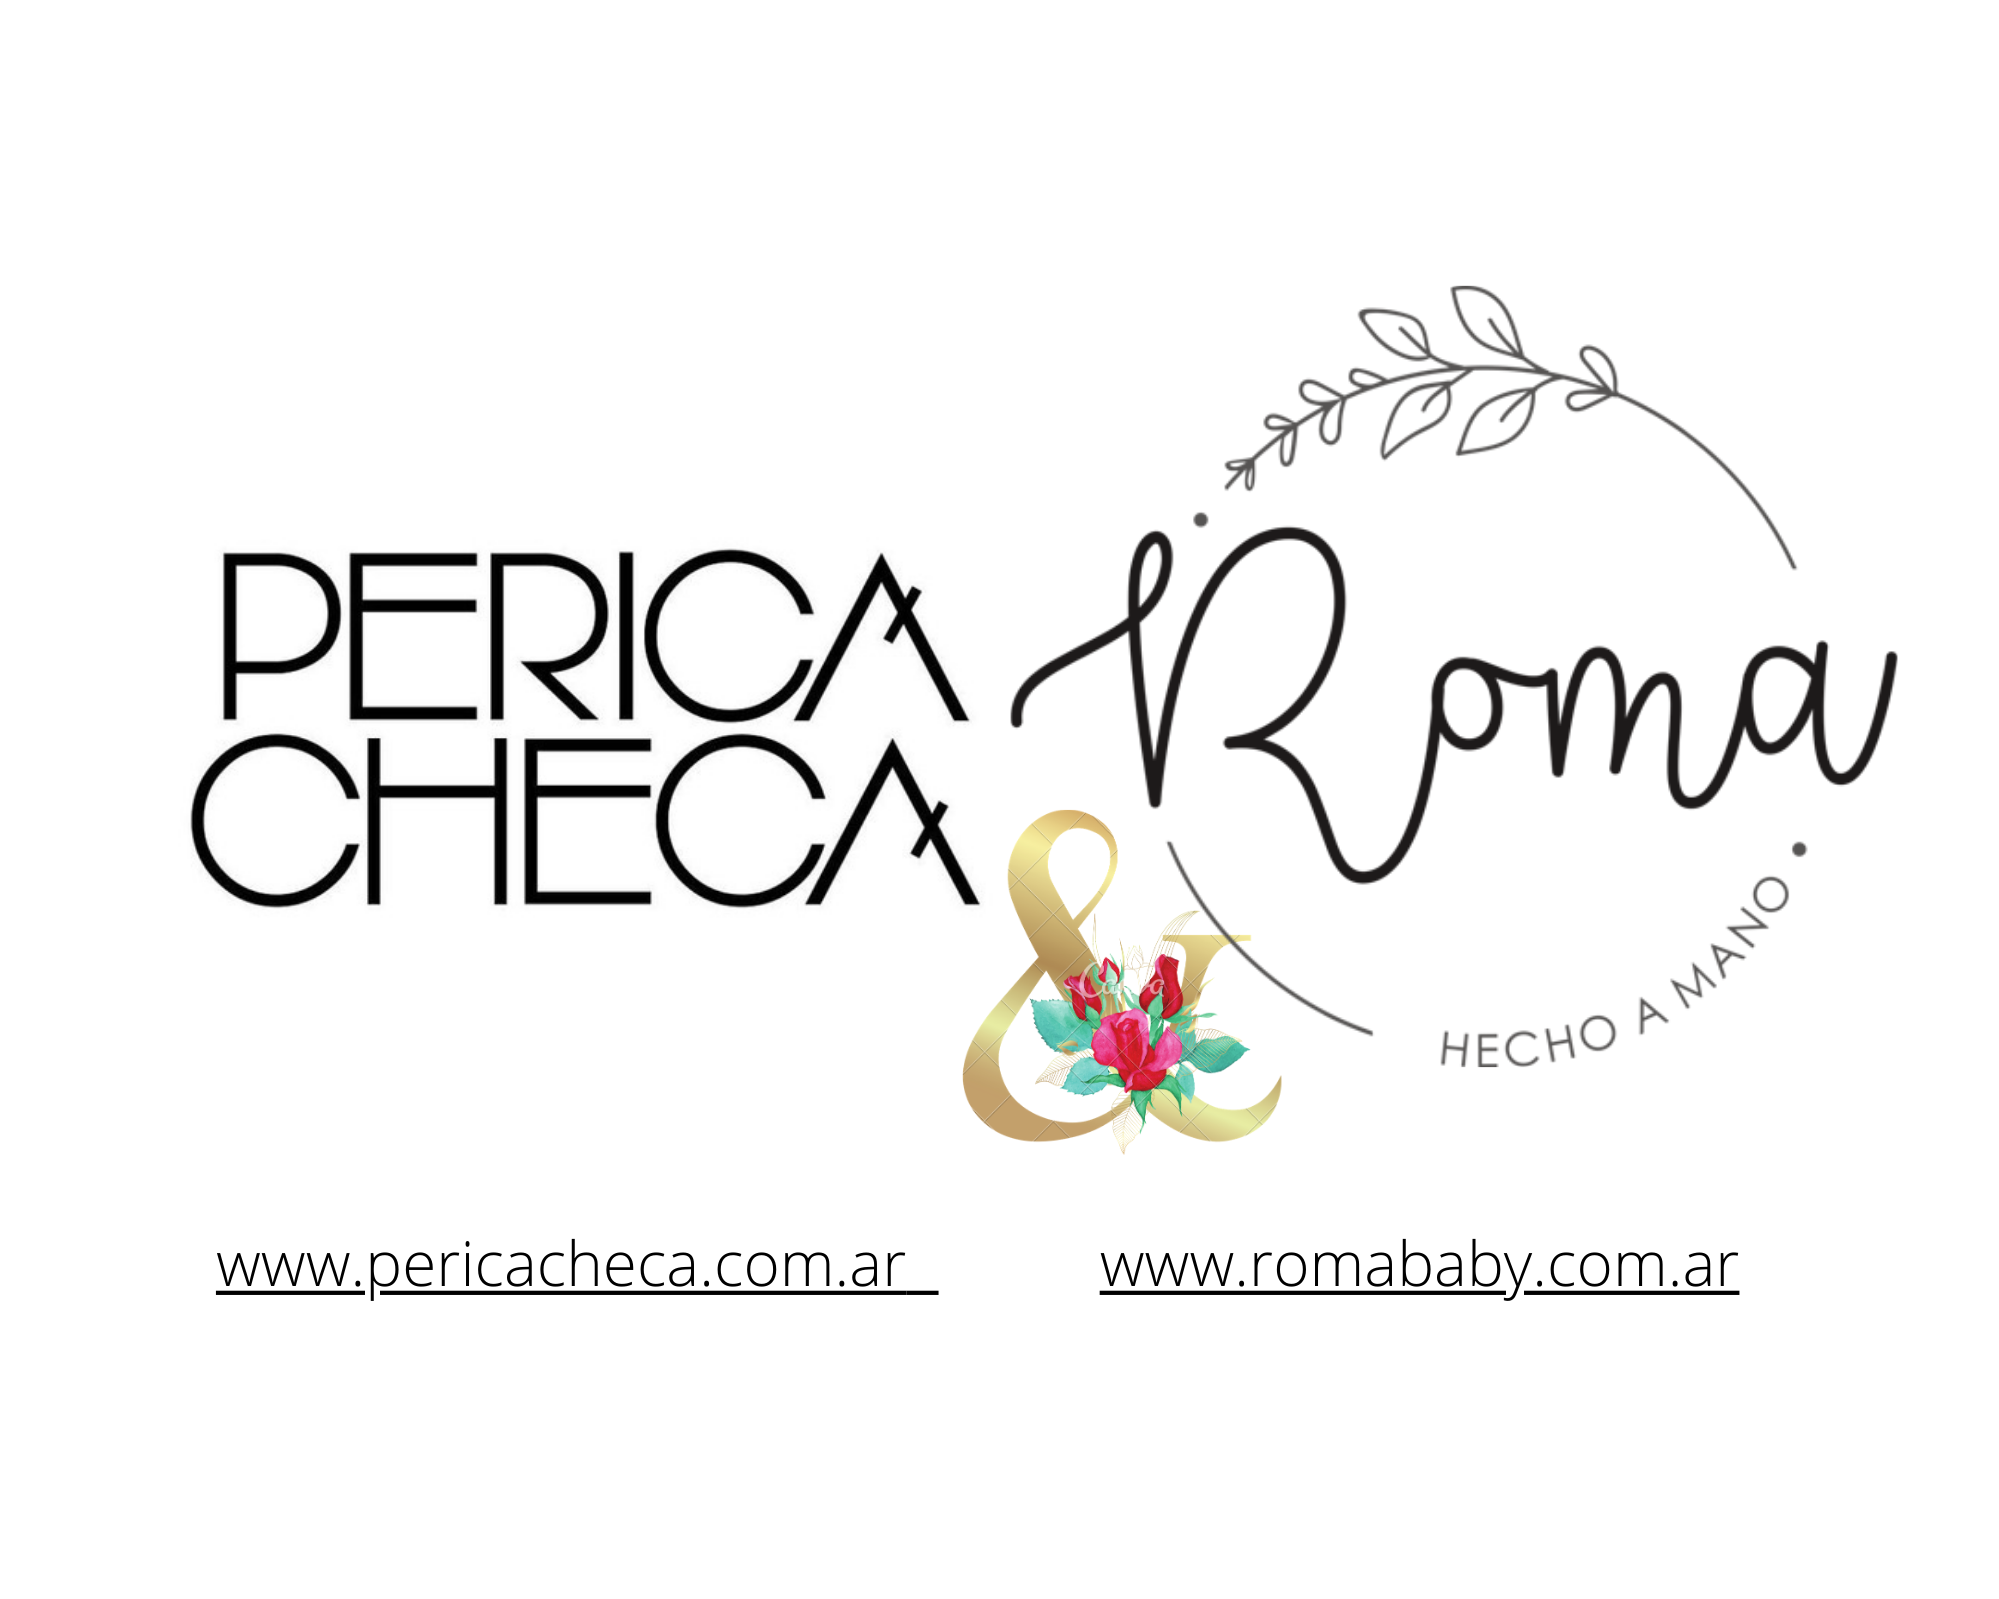 Perica Checa & Roma